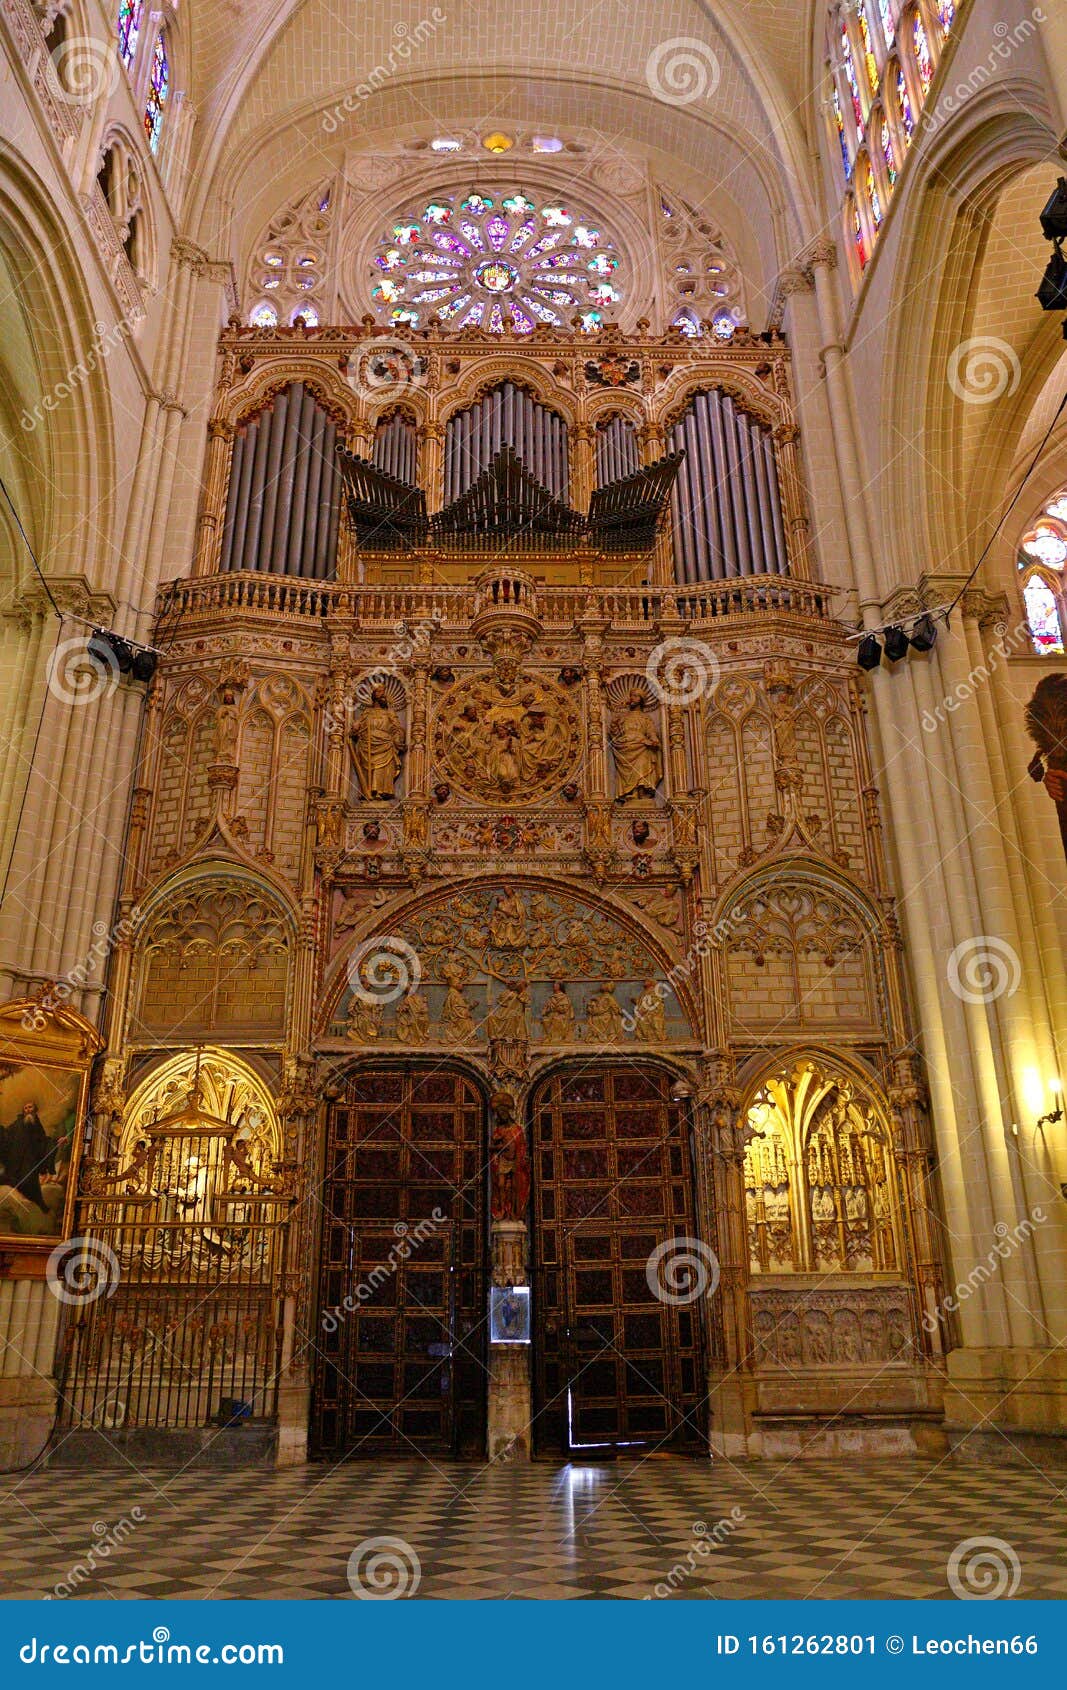 santa iglesia catedral primada de toledo, catedral primada santa maria de toledo, built in mudejar gothic style.